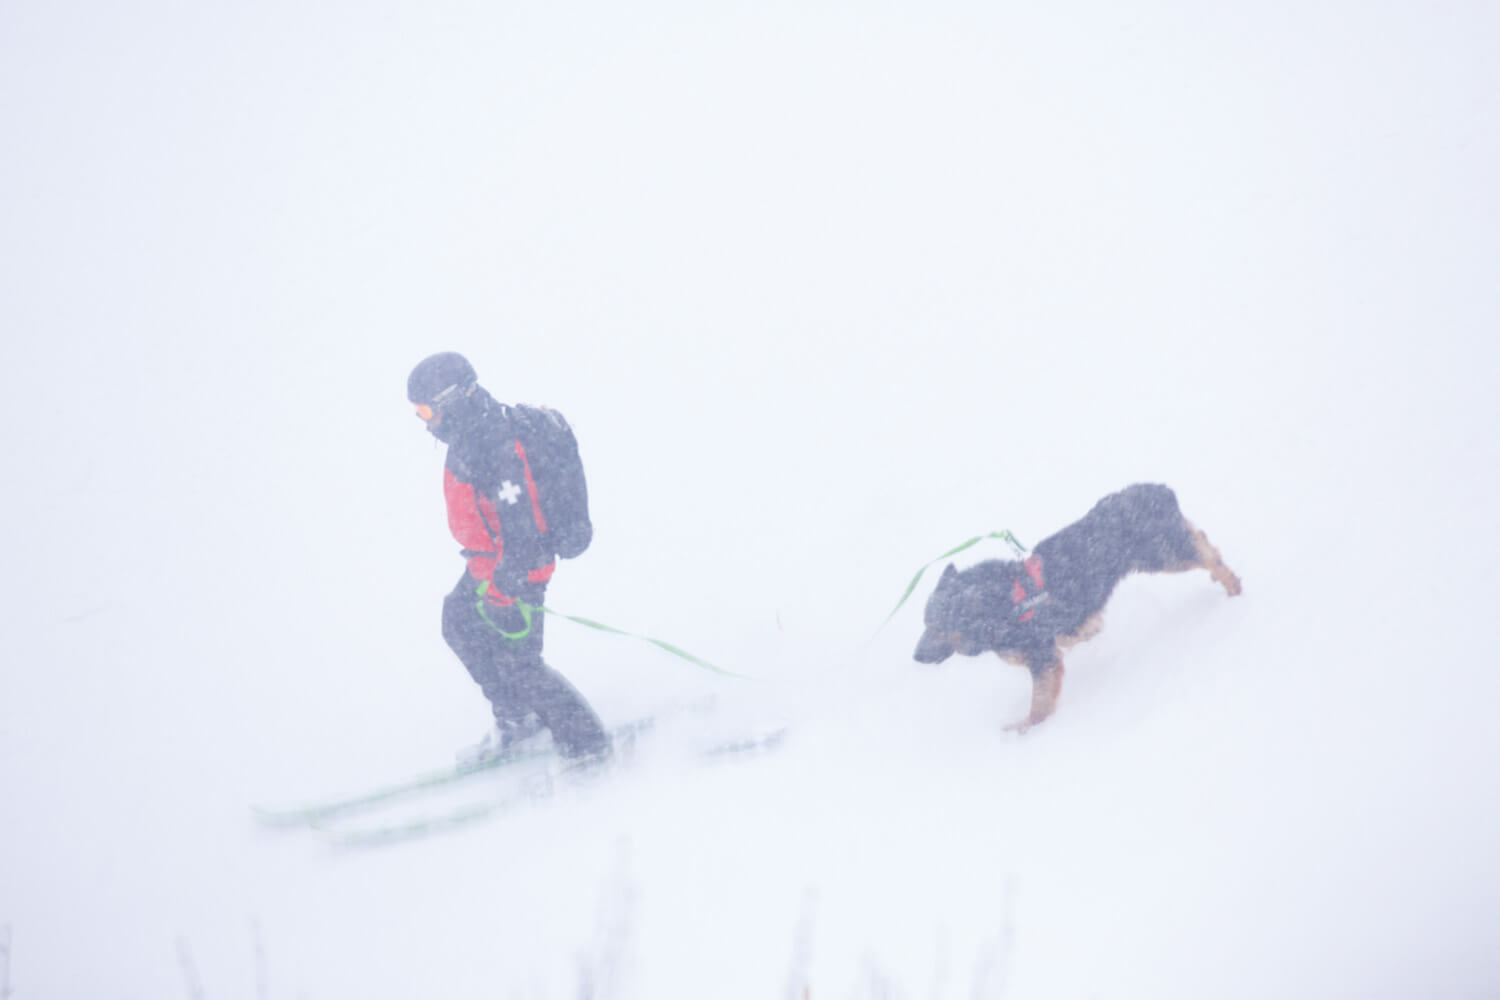 スキーパトロール隊員の相楽さんと雪崩救助犬のシャルル2